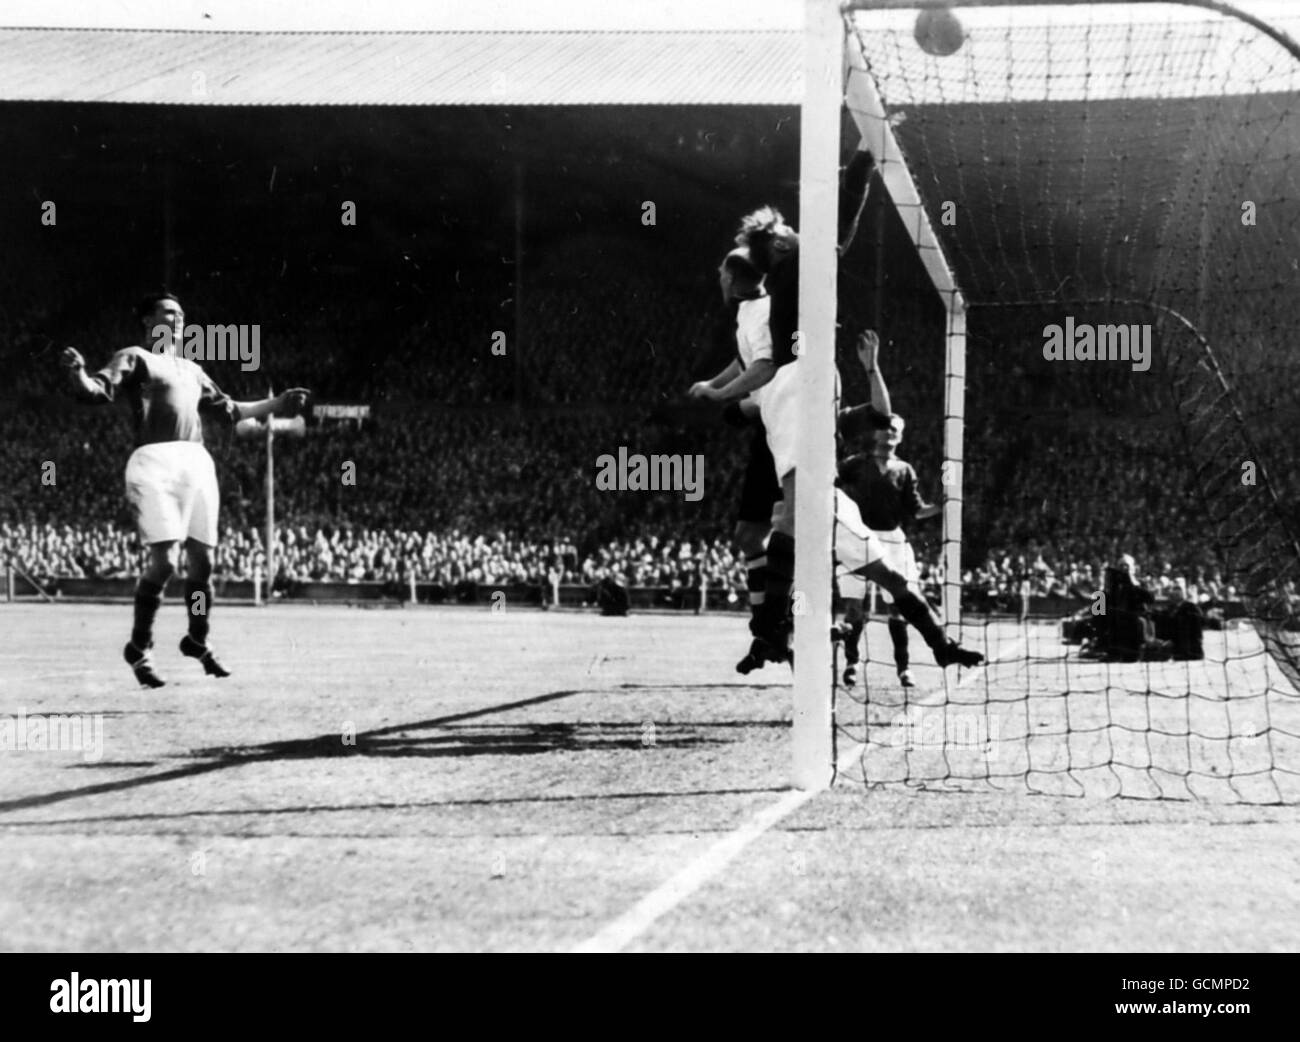 Football - finale de la coupe FA - Burnley / Charlton - Wembley.Action générale de la finale de la coupe FA le 26 avril 1947. Banque D'Images